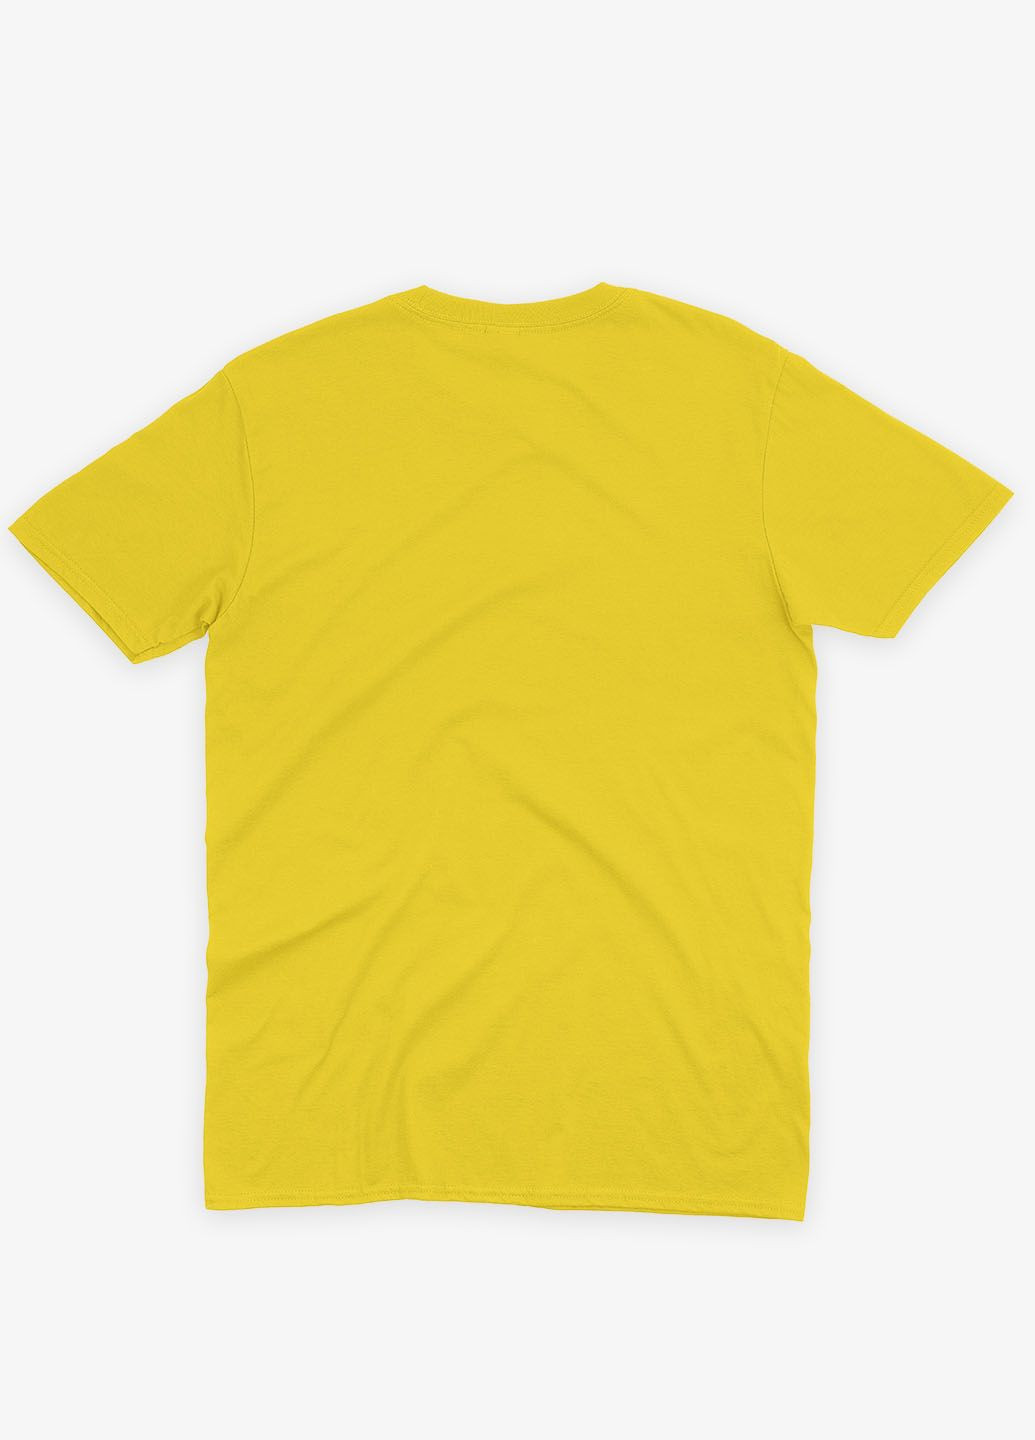 Желтая демисезонная футболка для девочки с патриотическим принтом байрактар (ts001-5-sun-005-1-127-g) Modno